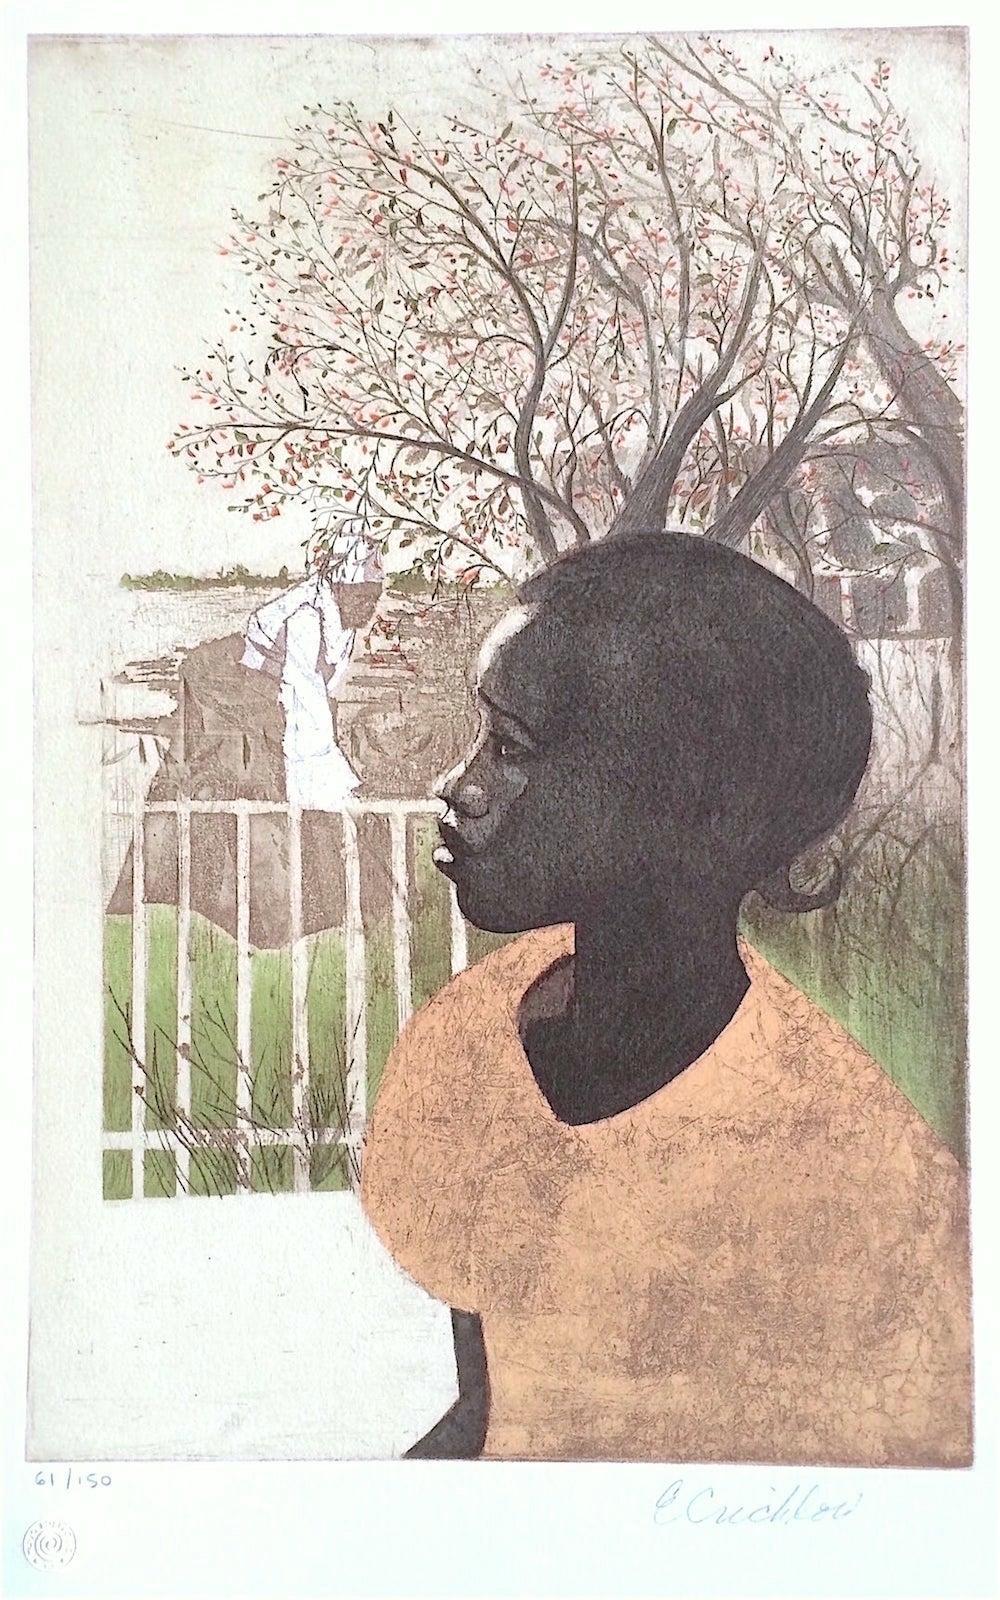 NEU DREAMS, signierte Lithographie, Porträt eines schwarzen Mädchens, afroamerikanische Geschichte (Zeitgenössisch), Print, von Ernest Crichlow